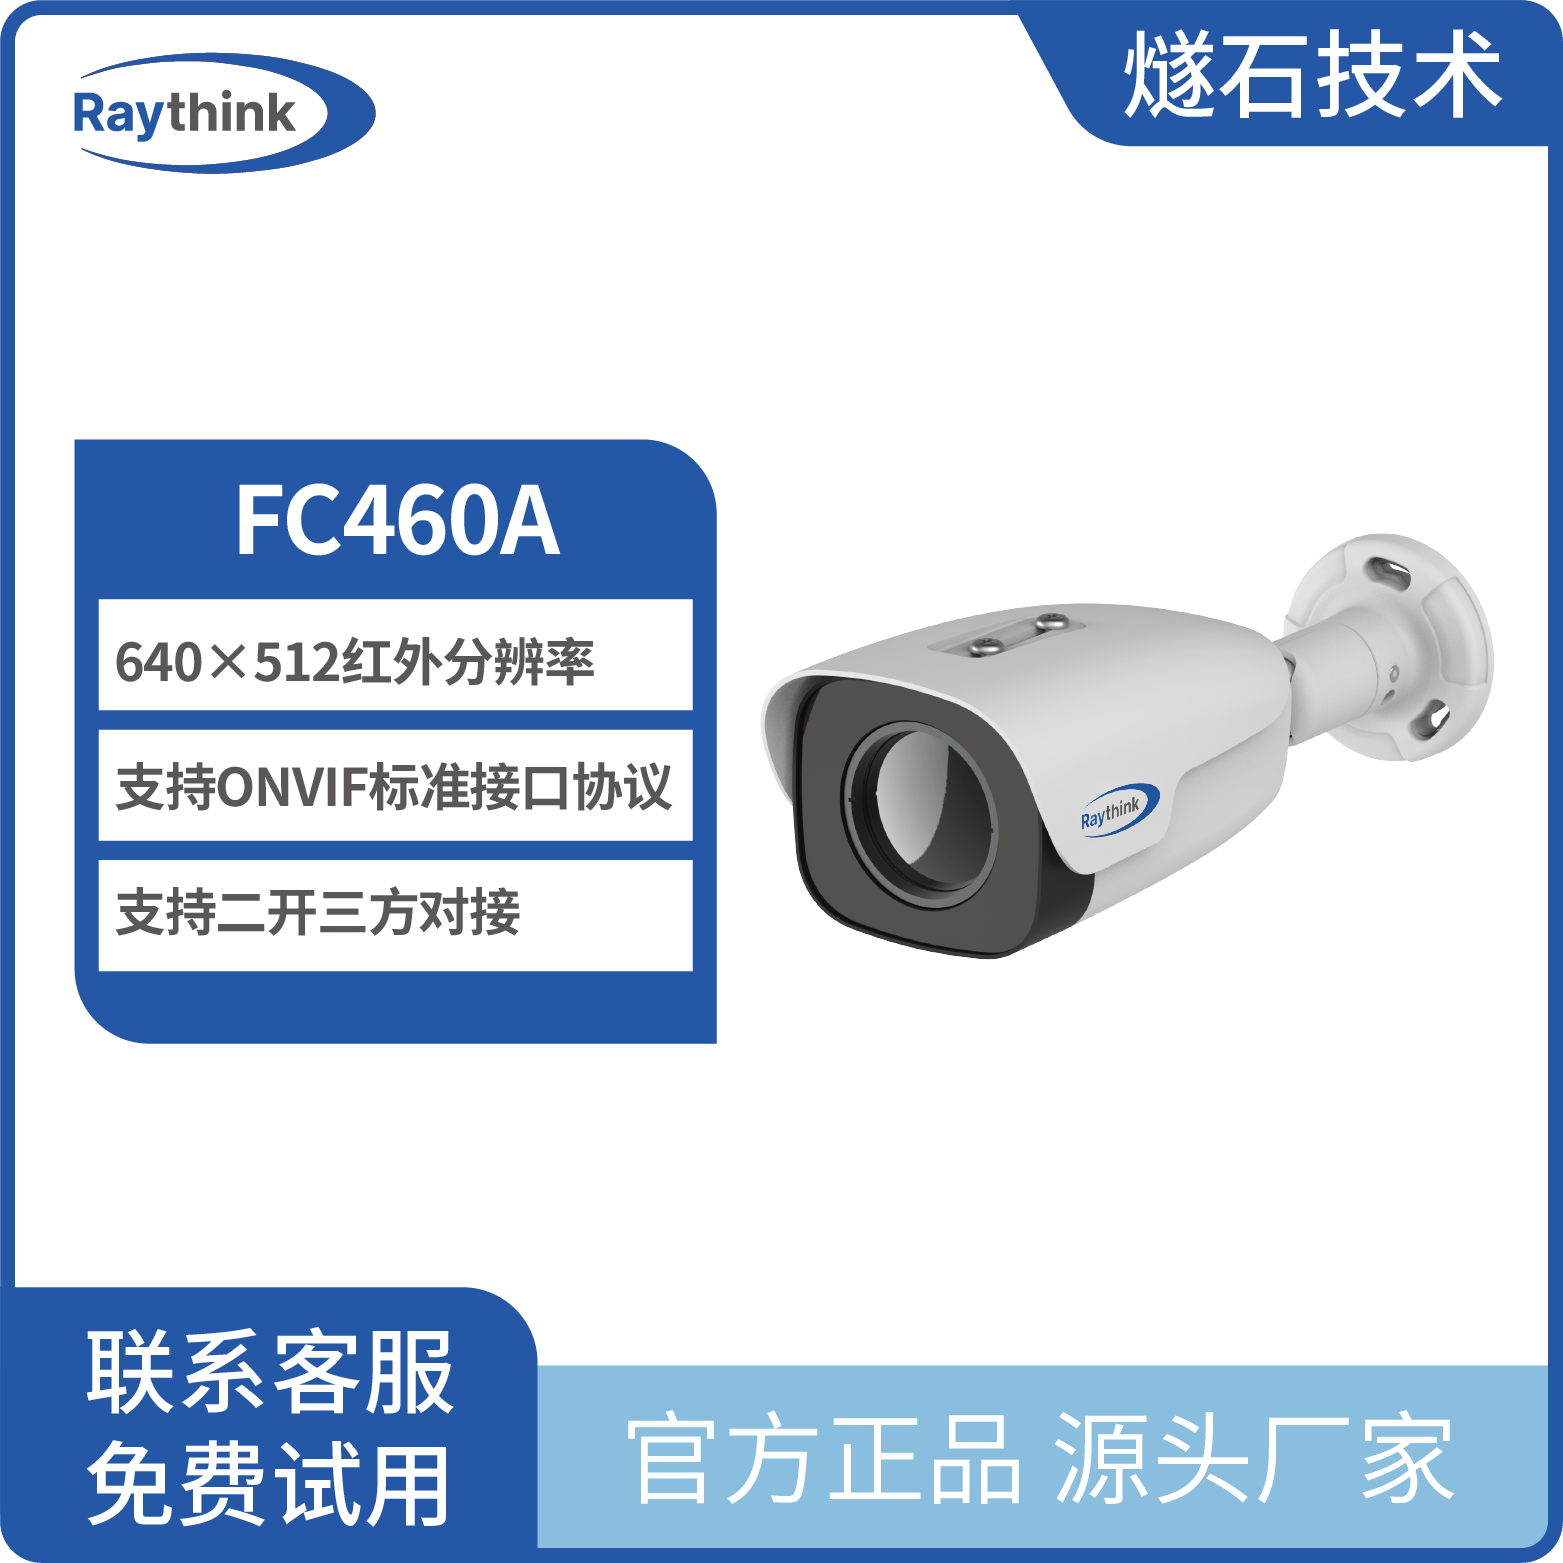 观测型热成像筒型网络摄像机FC460A 